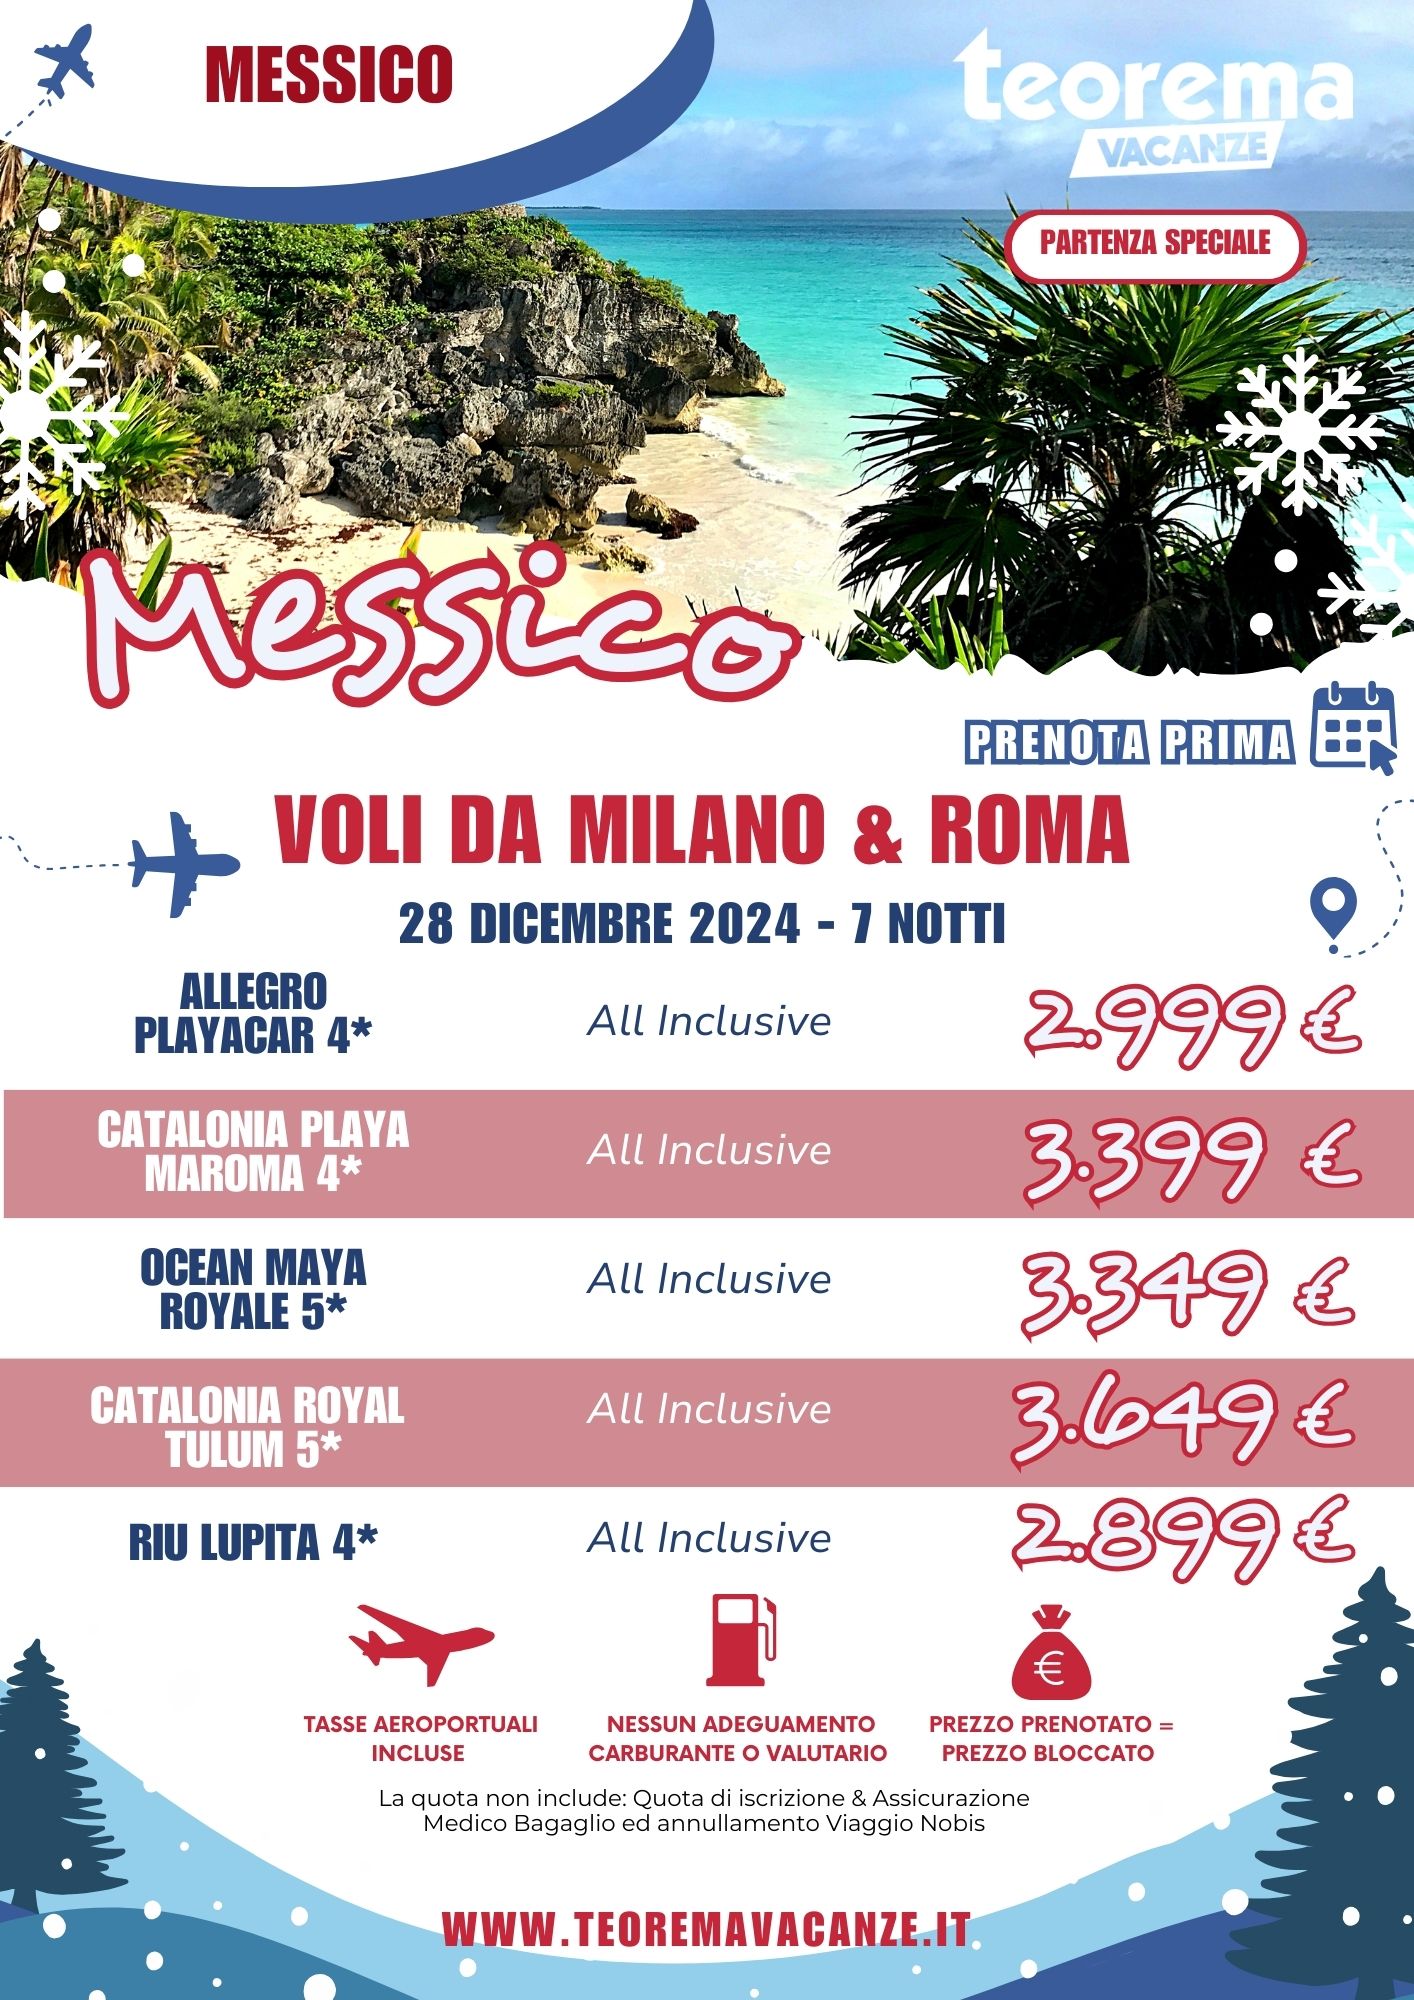 TEOREMA WINTER 2025 - MESSICO DA MILANO & ROMA